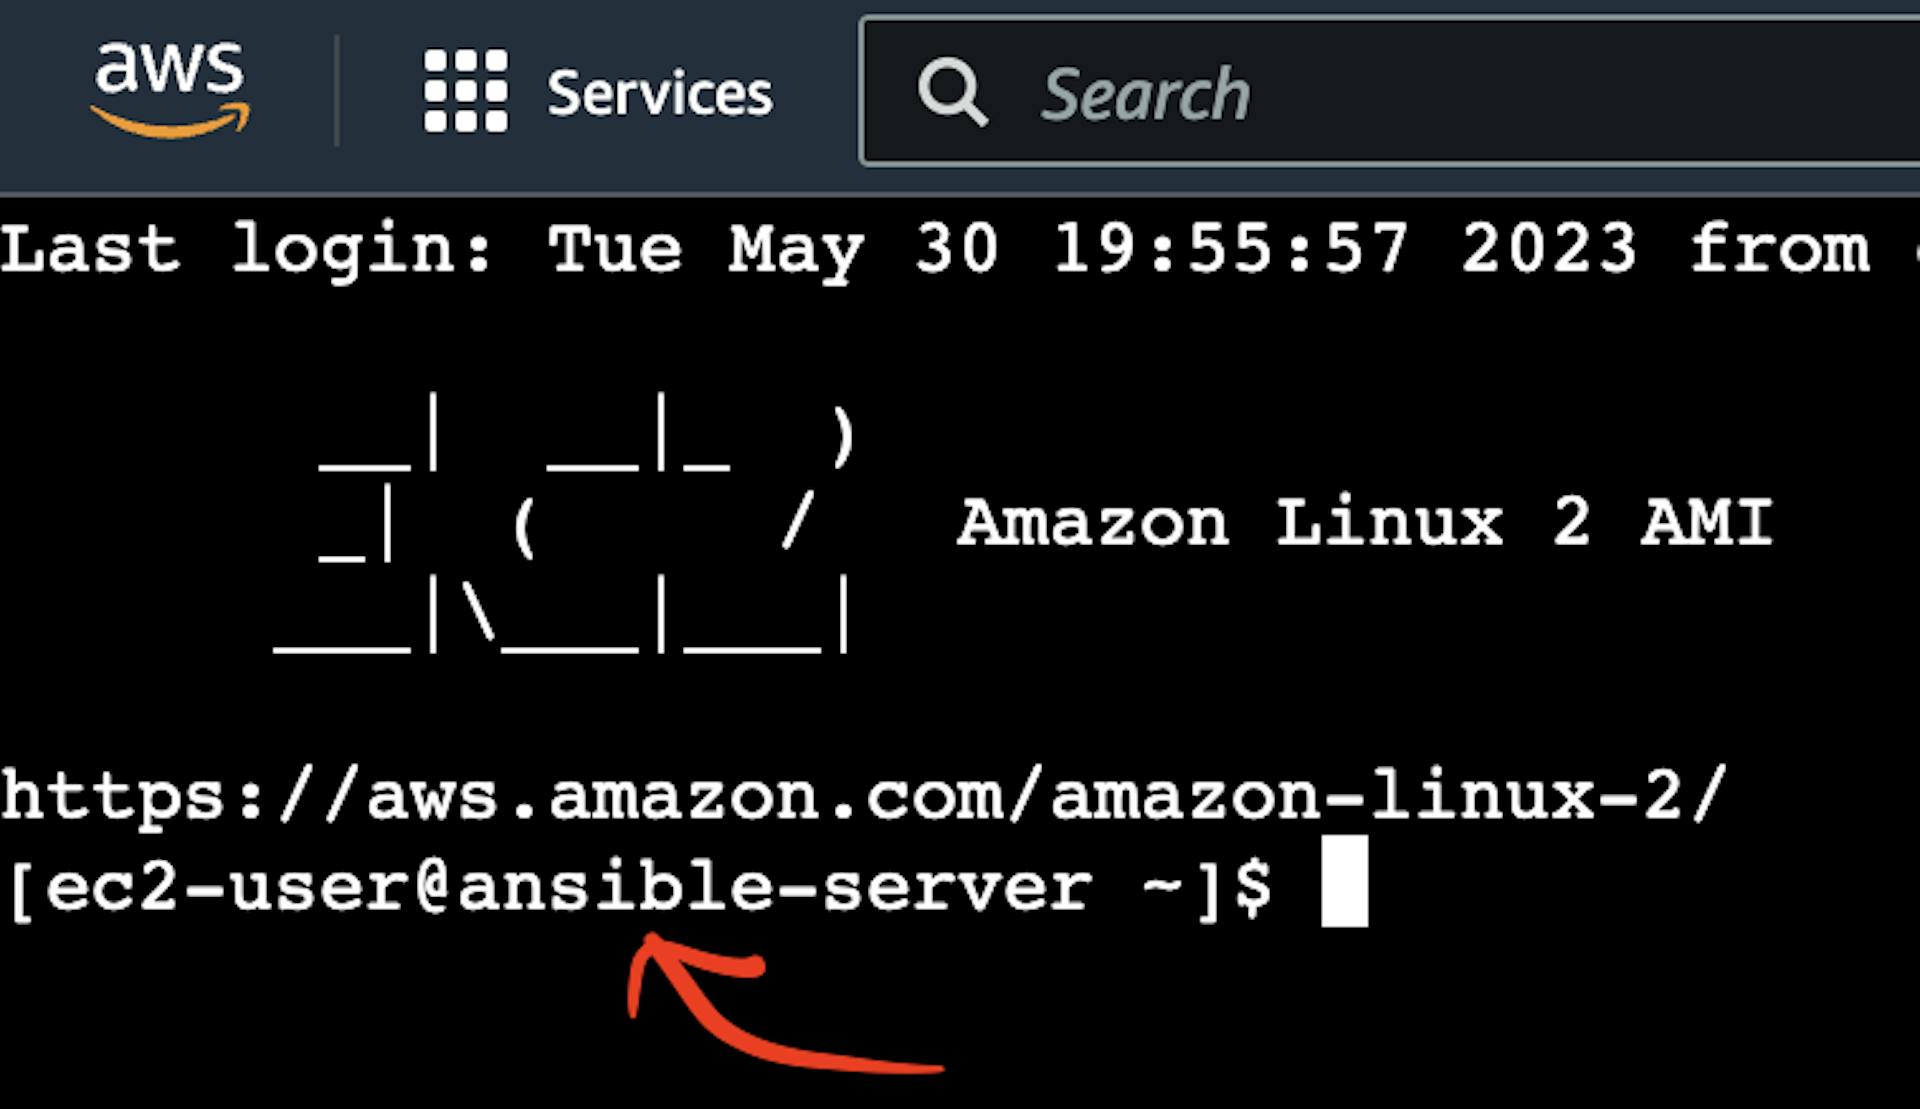 A captura de tela do terminal de instância do AWS EC2 Virtual Server com o ponteiro para o nome do host